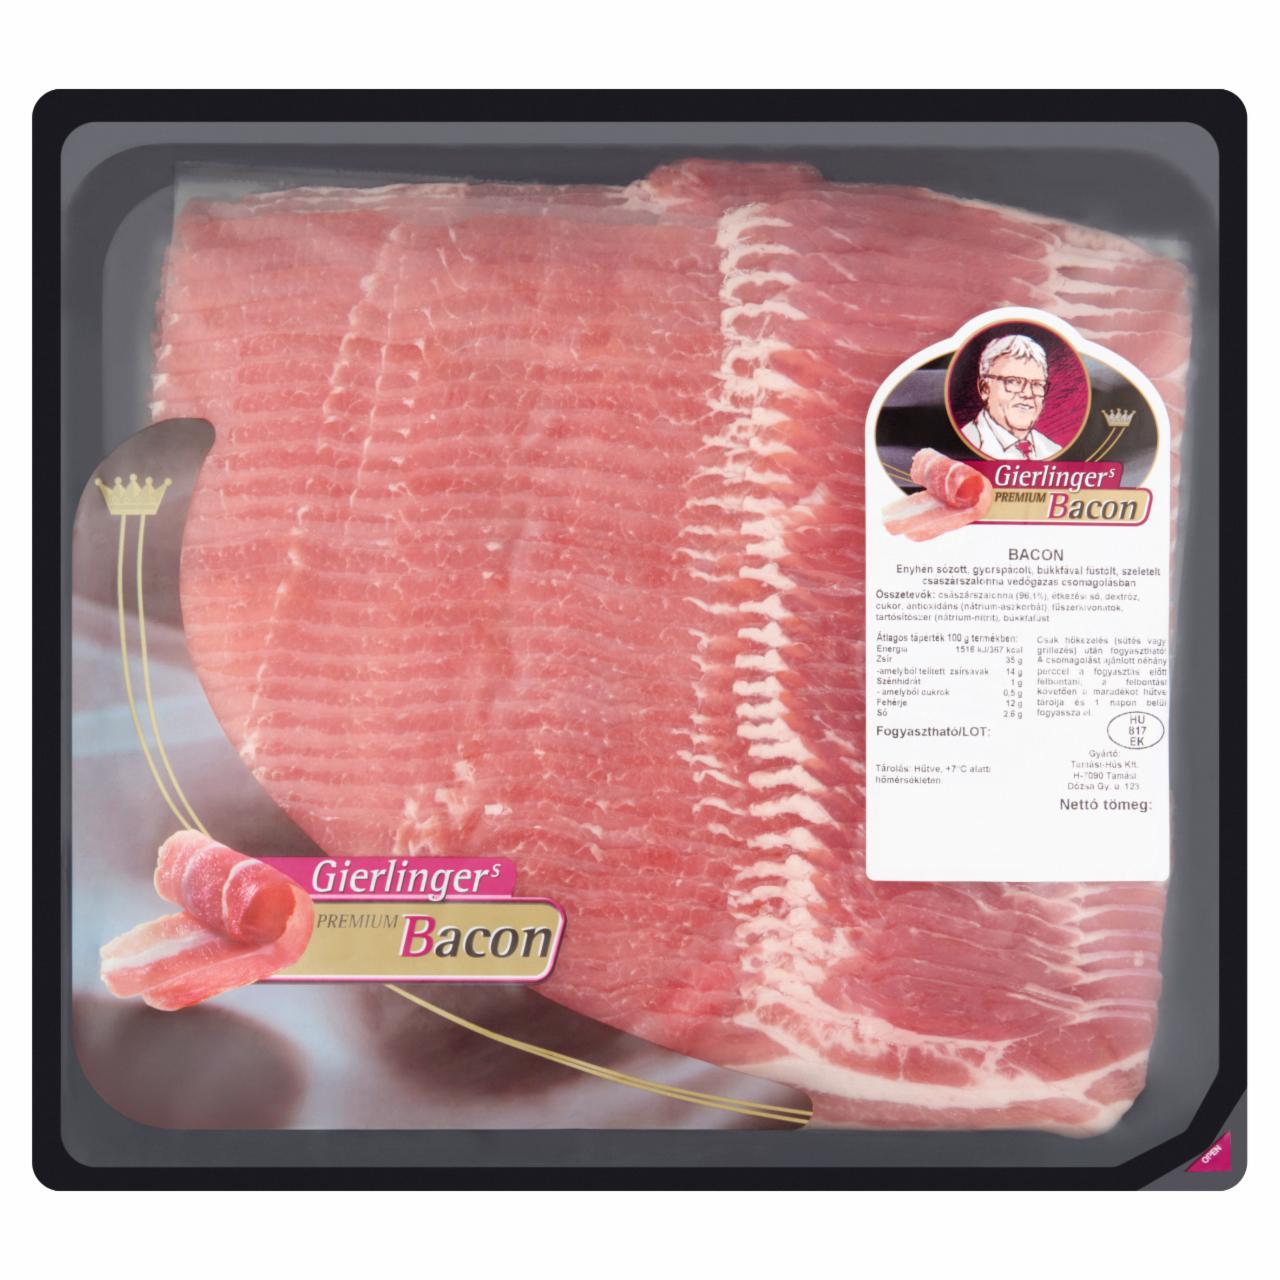 Képek - Gierlinger's szeletelt bacon szalonna 1 kg